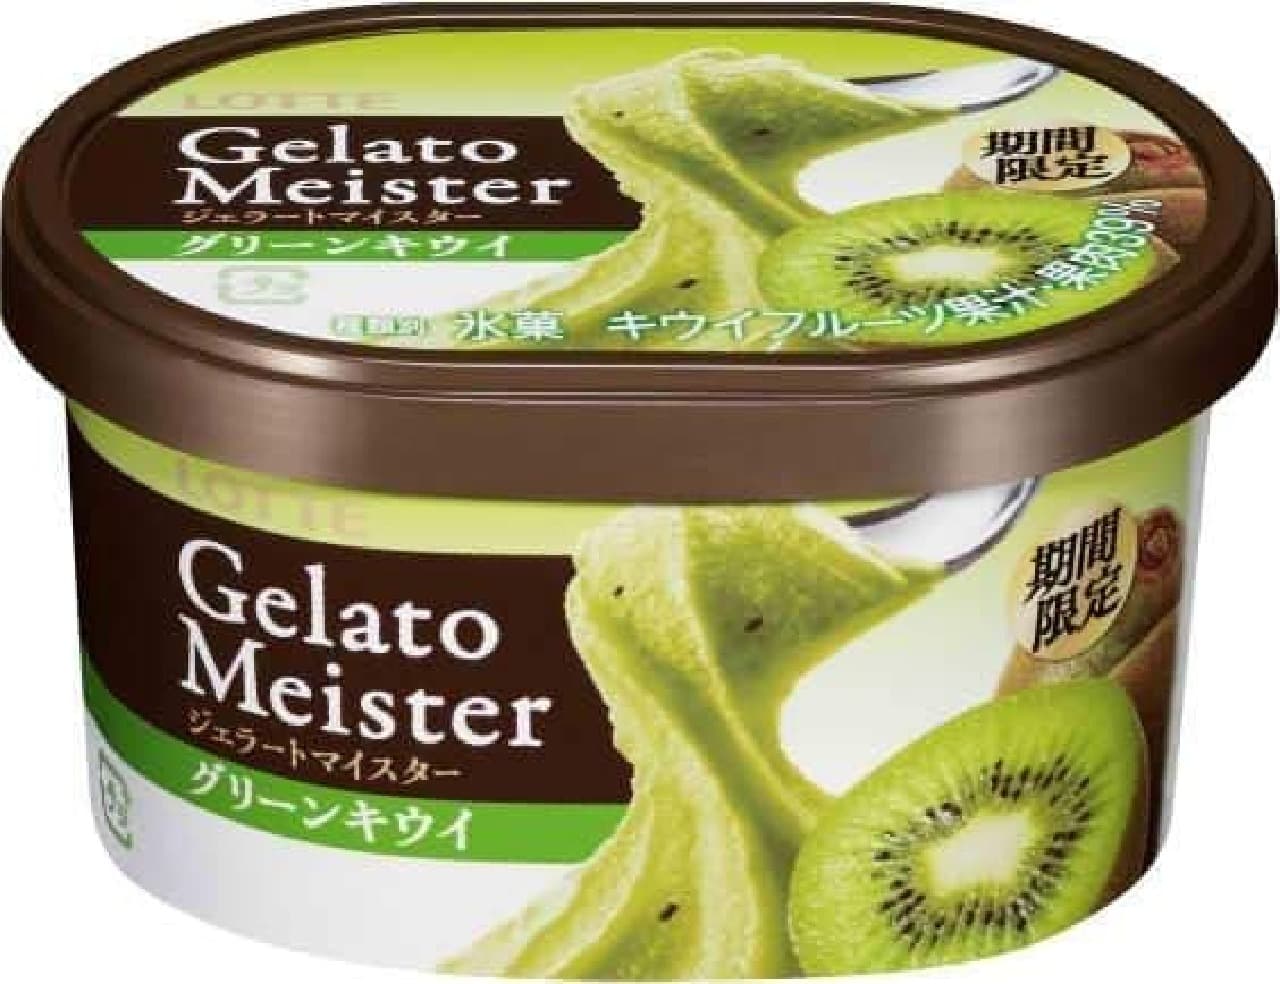 "Gelato Meister Green Kiwi"